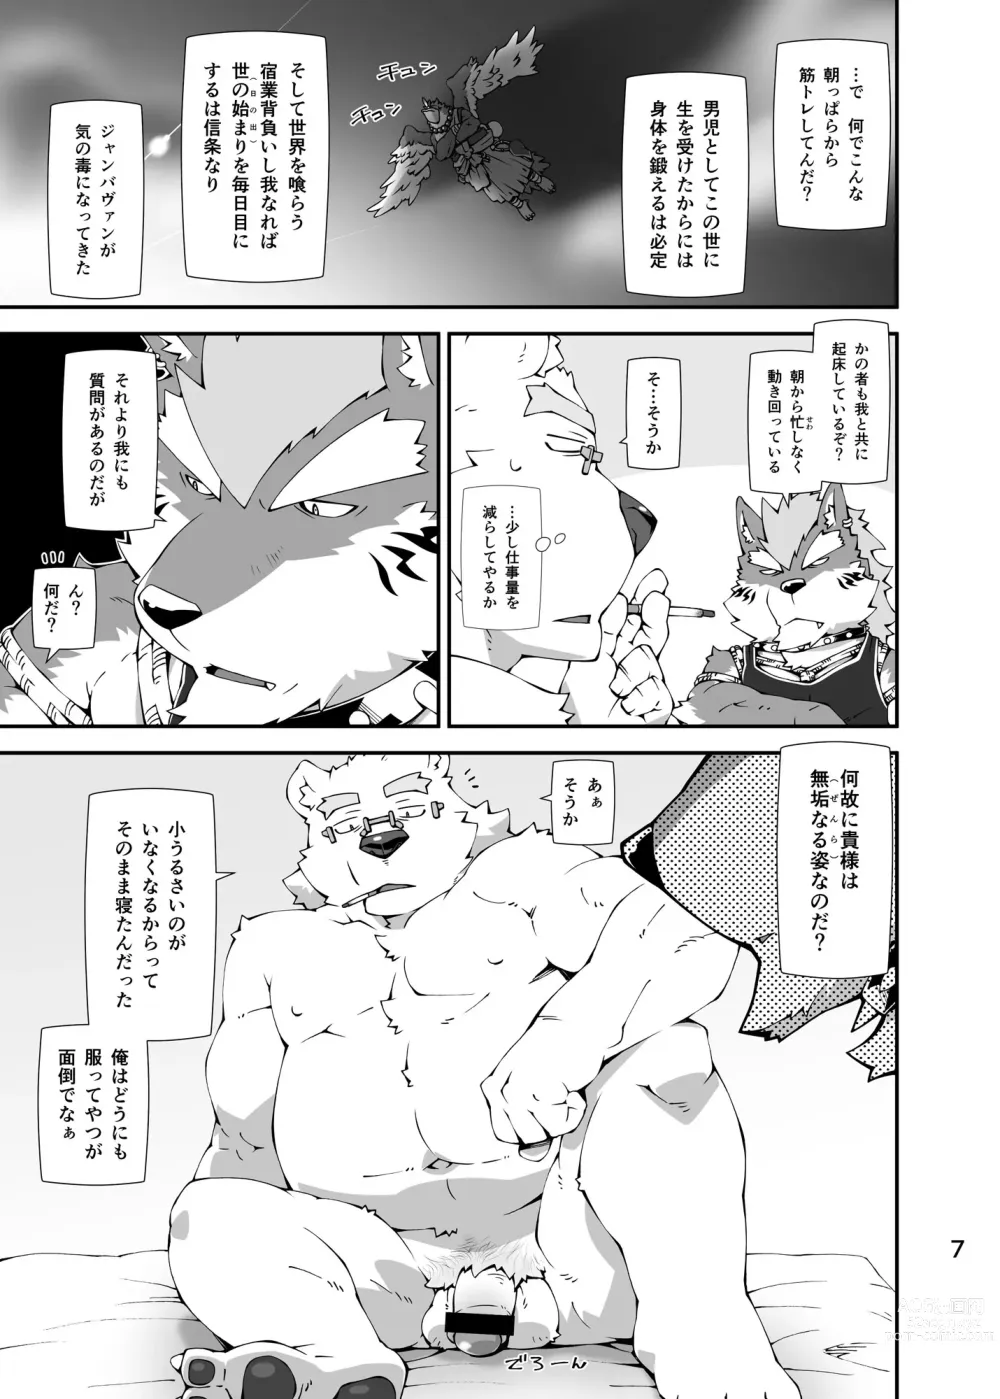 Page 6 of doujinshi Shirokuma to Fe